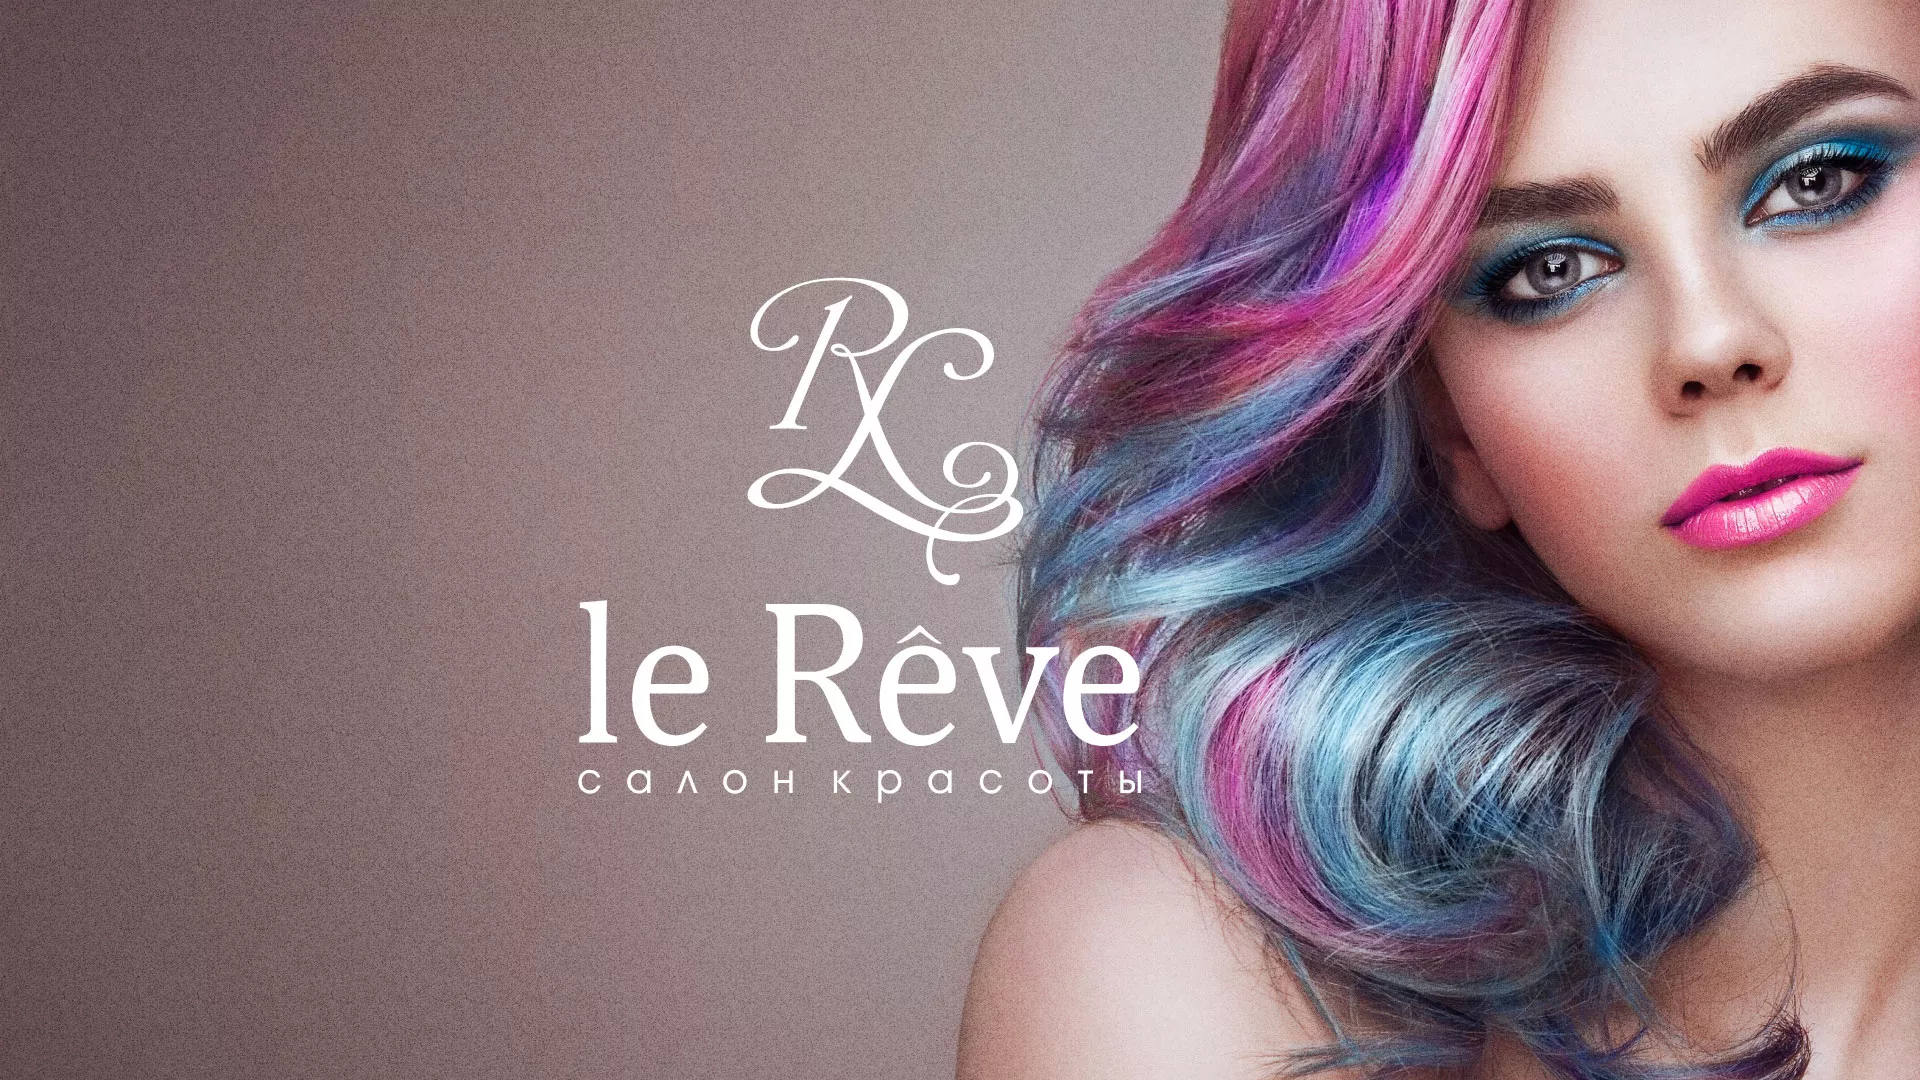 Создание сайта для салона красоты «Le Reve» в Монино